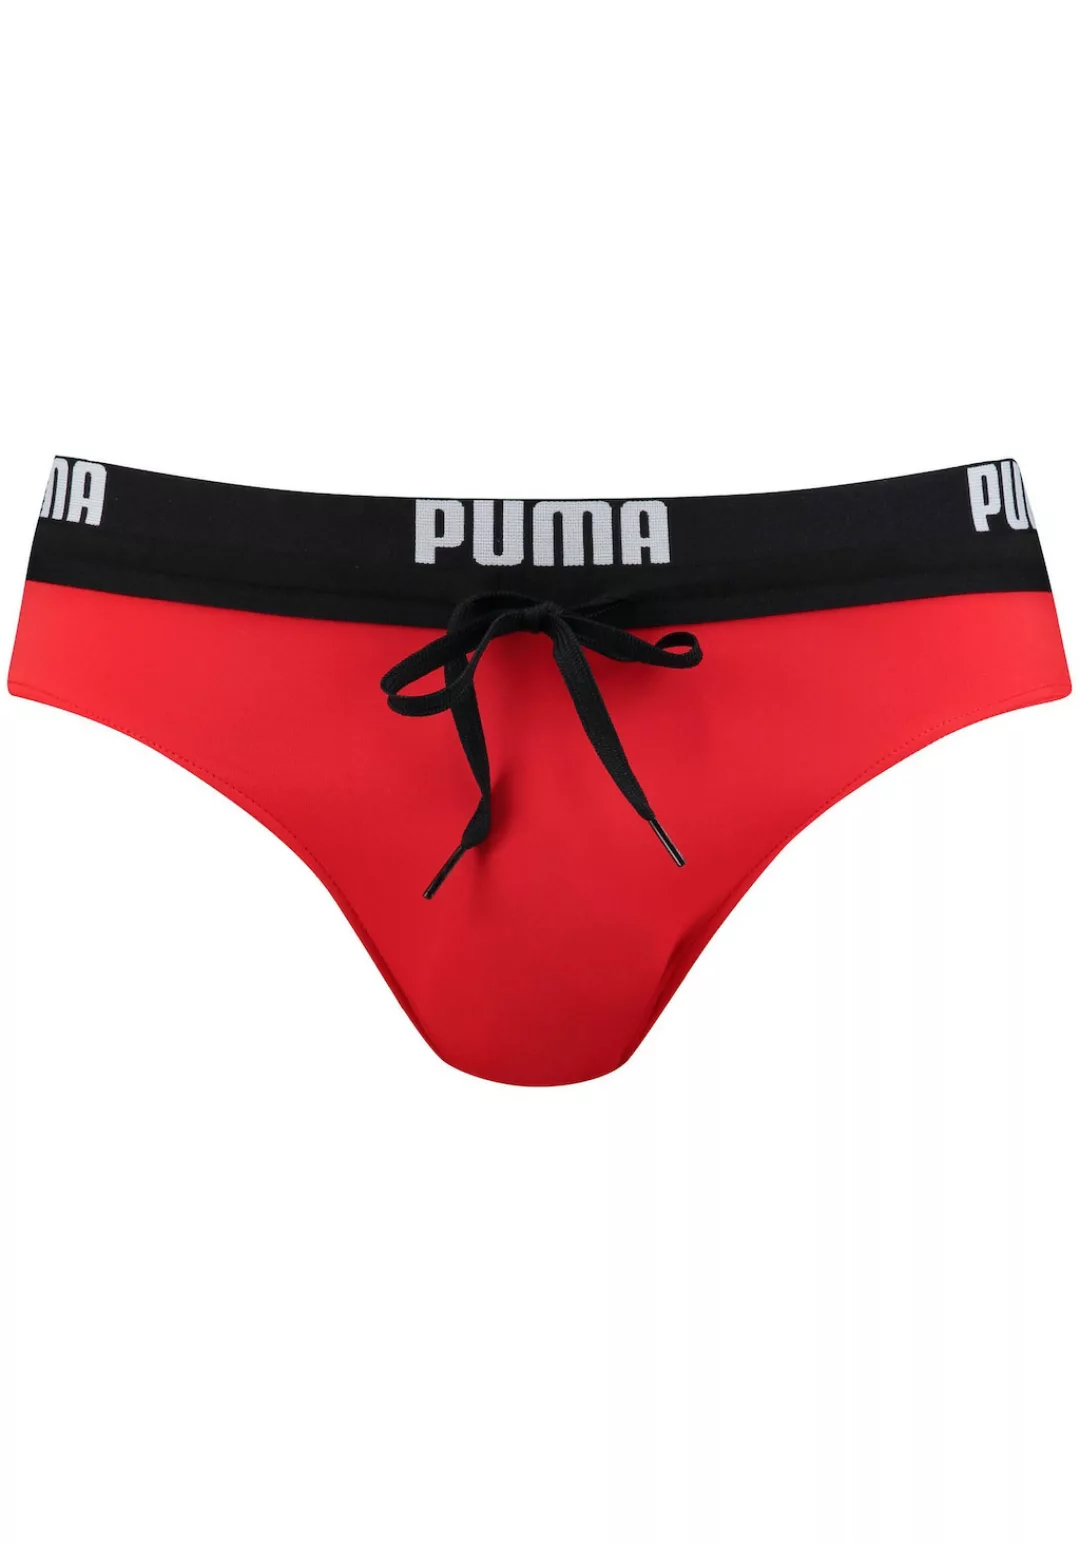 Puma Logo Badeslips 2XL Red günstig online kaufen